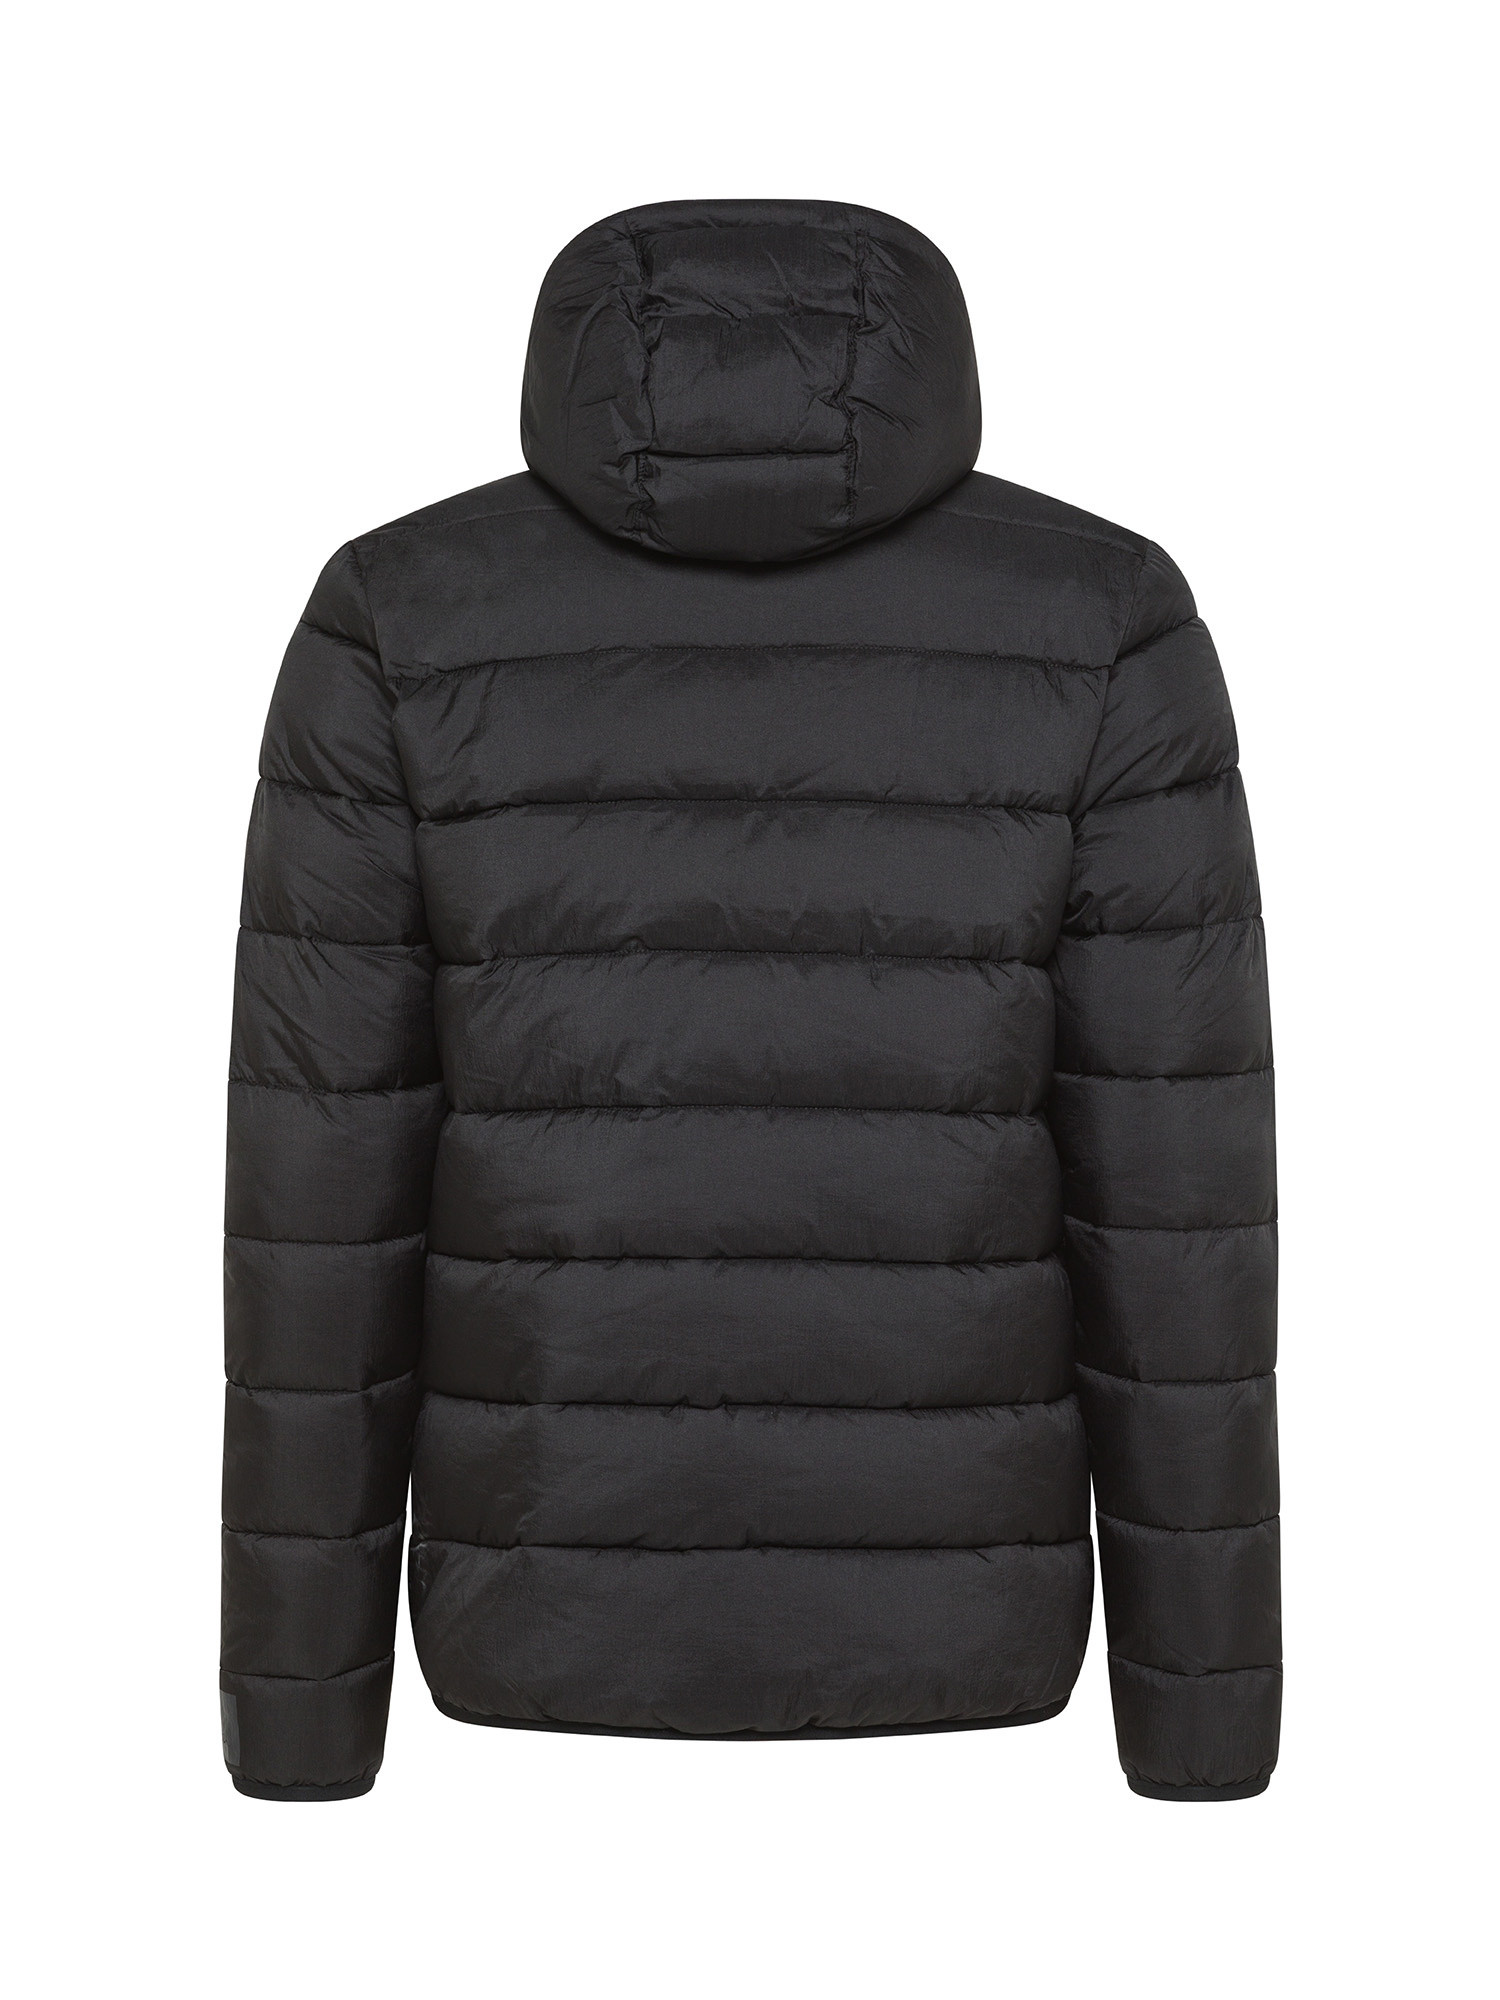 Hooded down jacket, Black, large image number 1